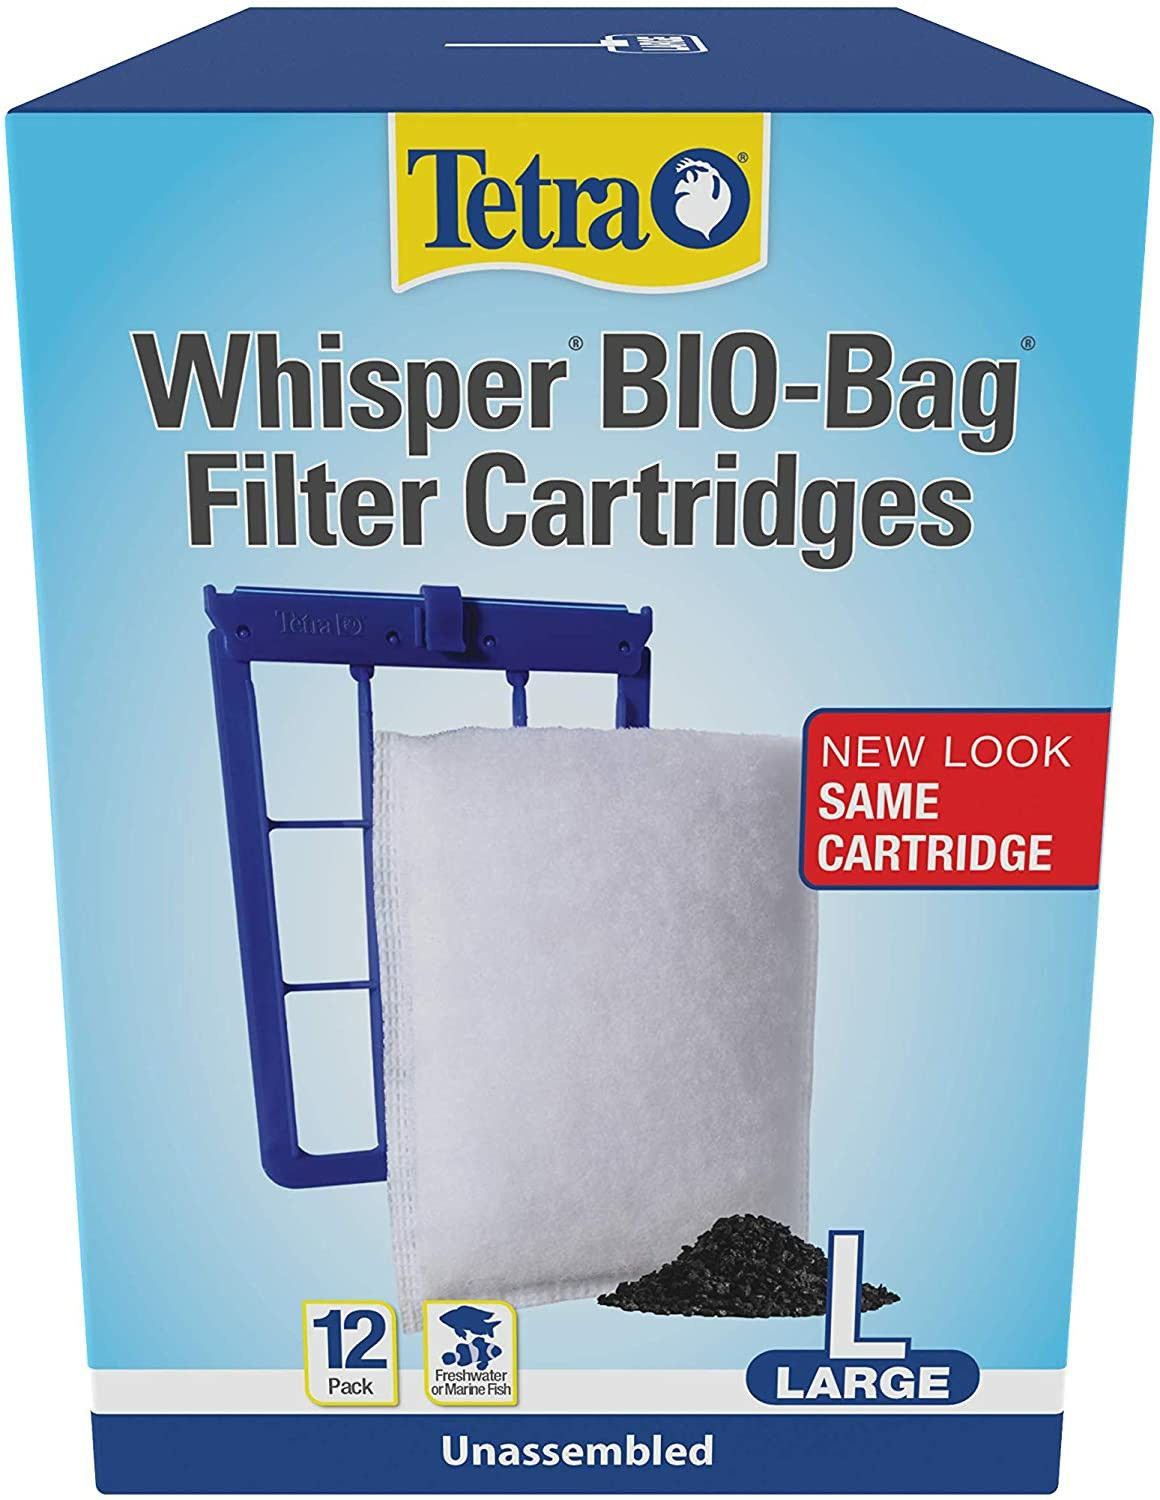 Whisper Bio-Bag filter cartridges, Tetra ,12 ct